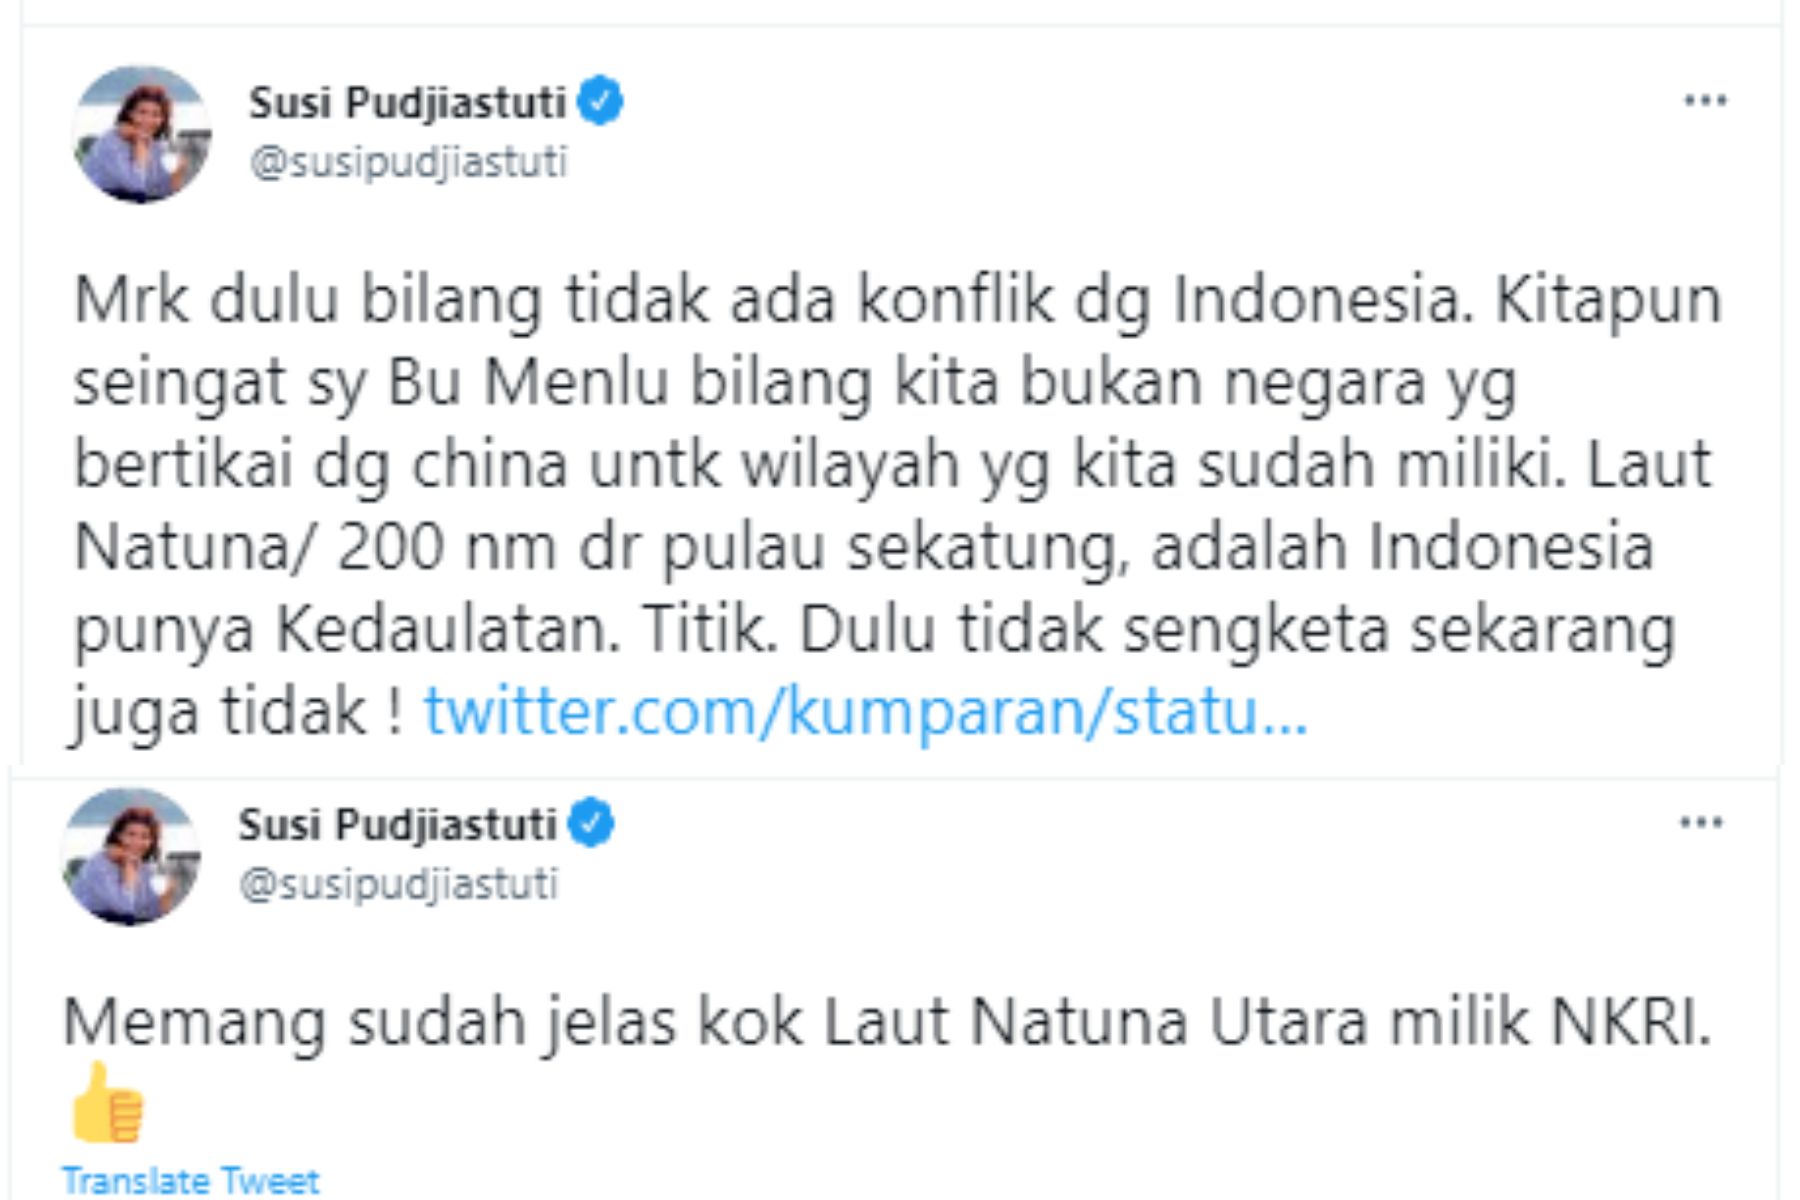 Susi Pudjiastuti menyinggung soal China yang protes pada Indonesia perihal Laut Natuna Utara dan ungkap hal ini